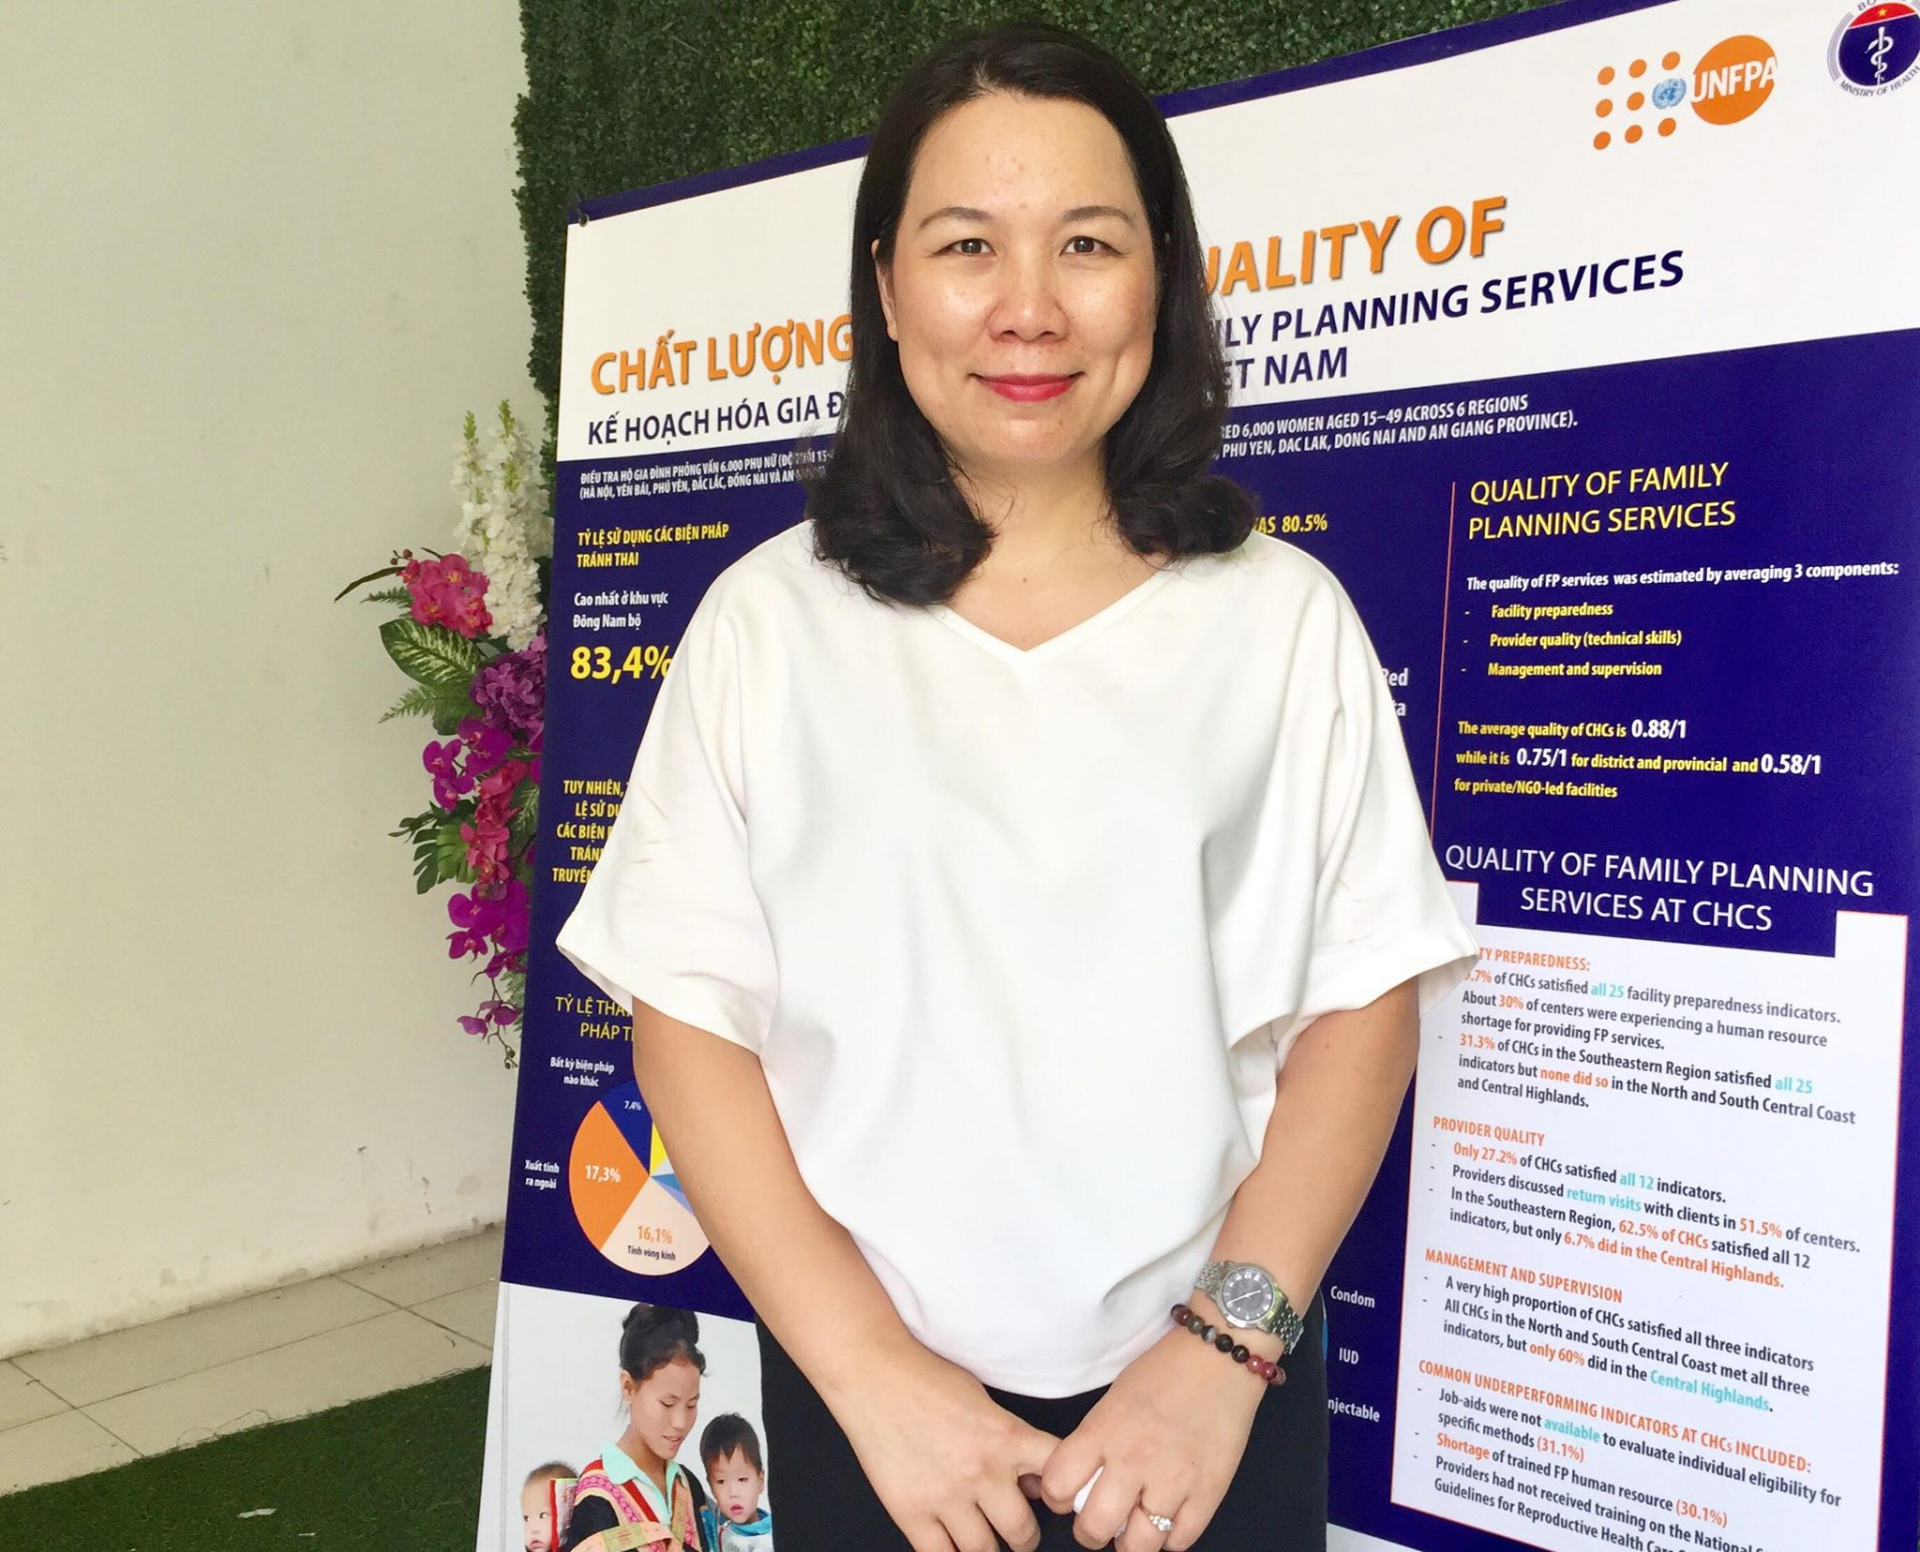 Trần Thị Thu Hà – Phó Giám đốc Trung tâm nghiên cứu và đào tạo phát triển công cộng